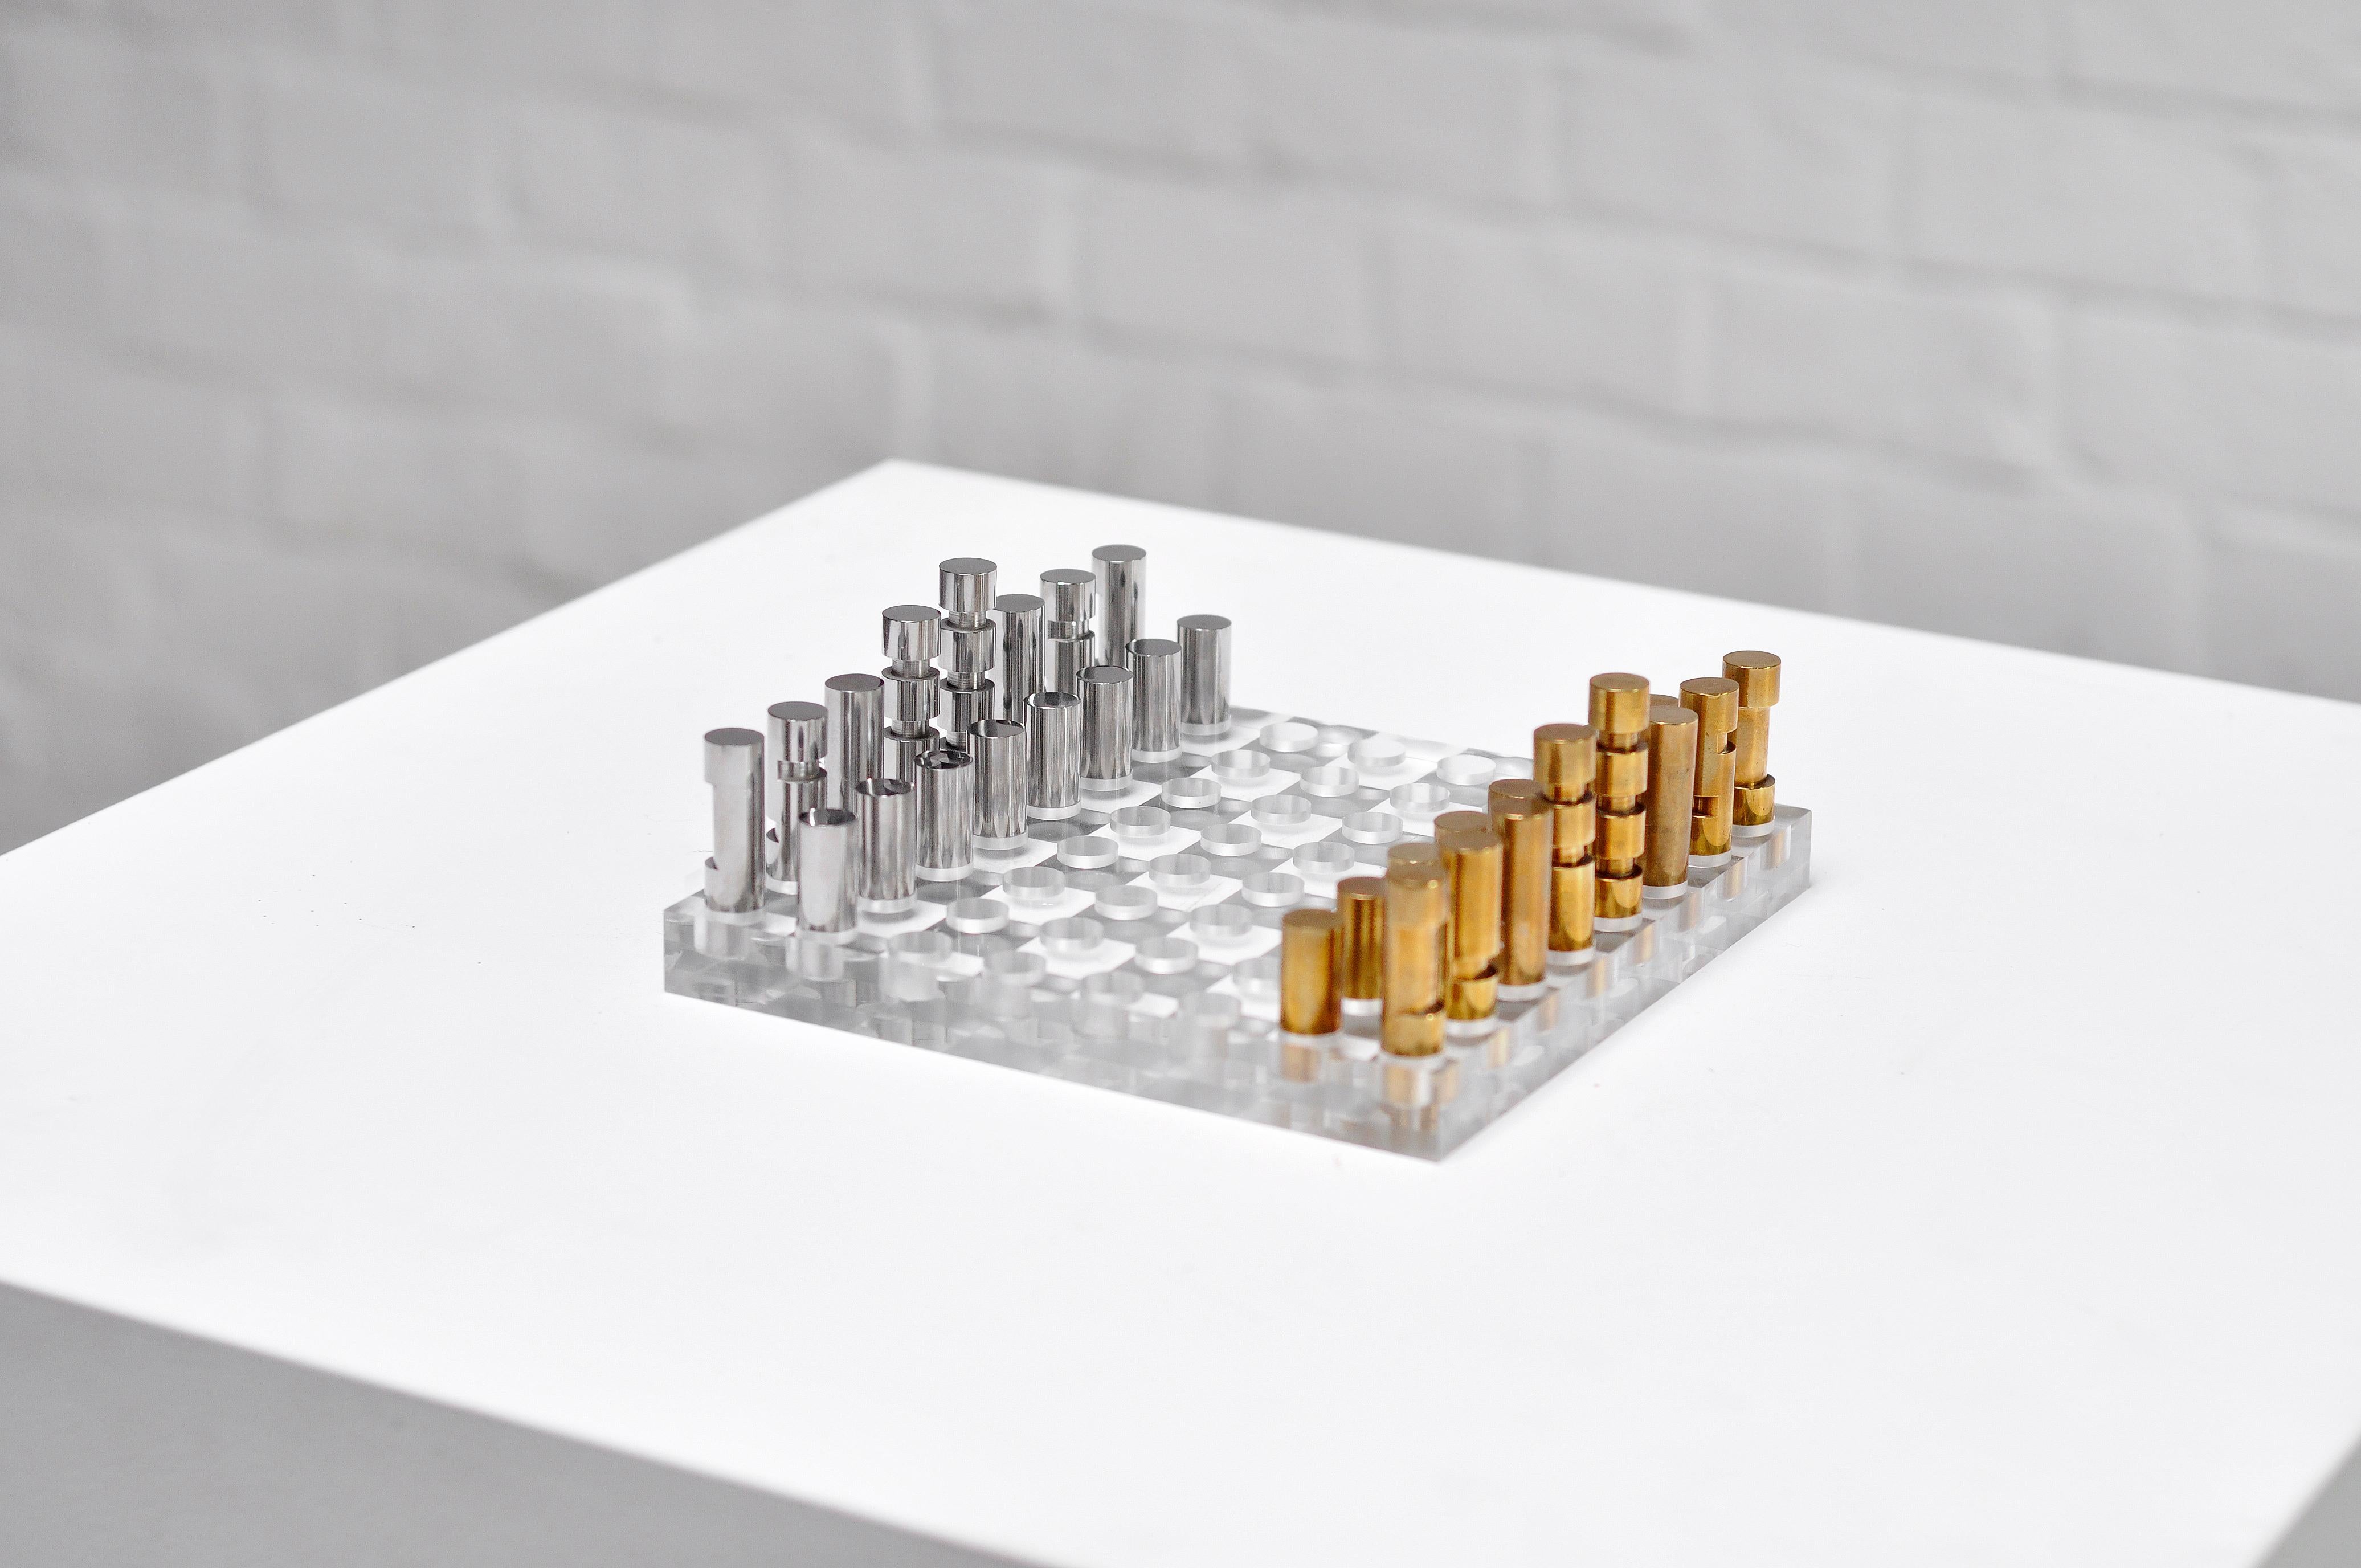 Ein besonderes minimalistisches französisches Schachspiel aus den 1970er Jahren. Es zeichnet sich durch ein modernistisches Design mit einem perforierten Sockel aus dickem Plexiglas aus, der von skulpturalen Metall- und Bronzefiguren gekrönt wird.